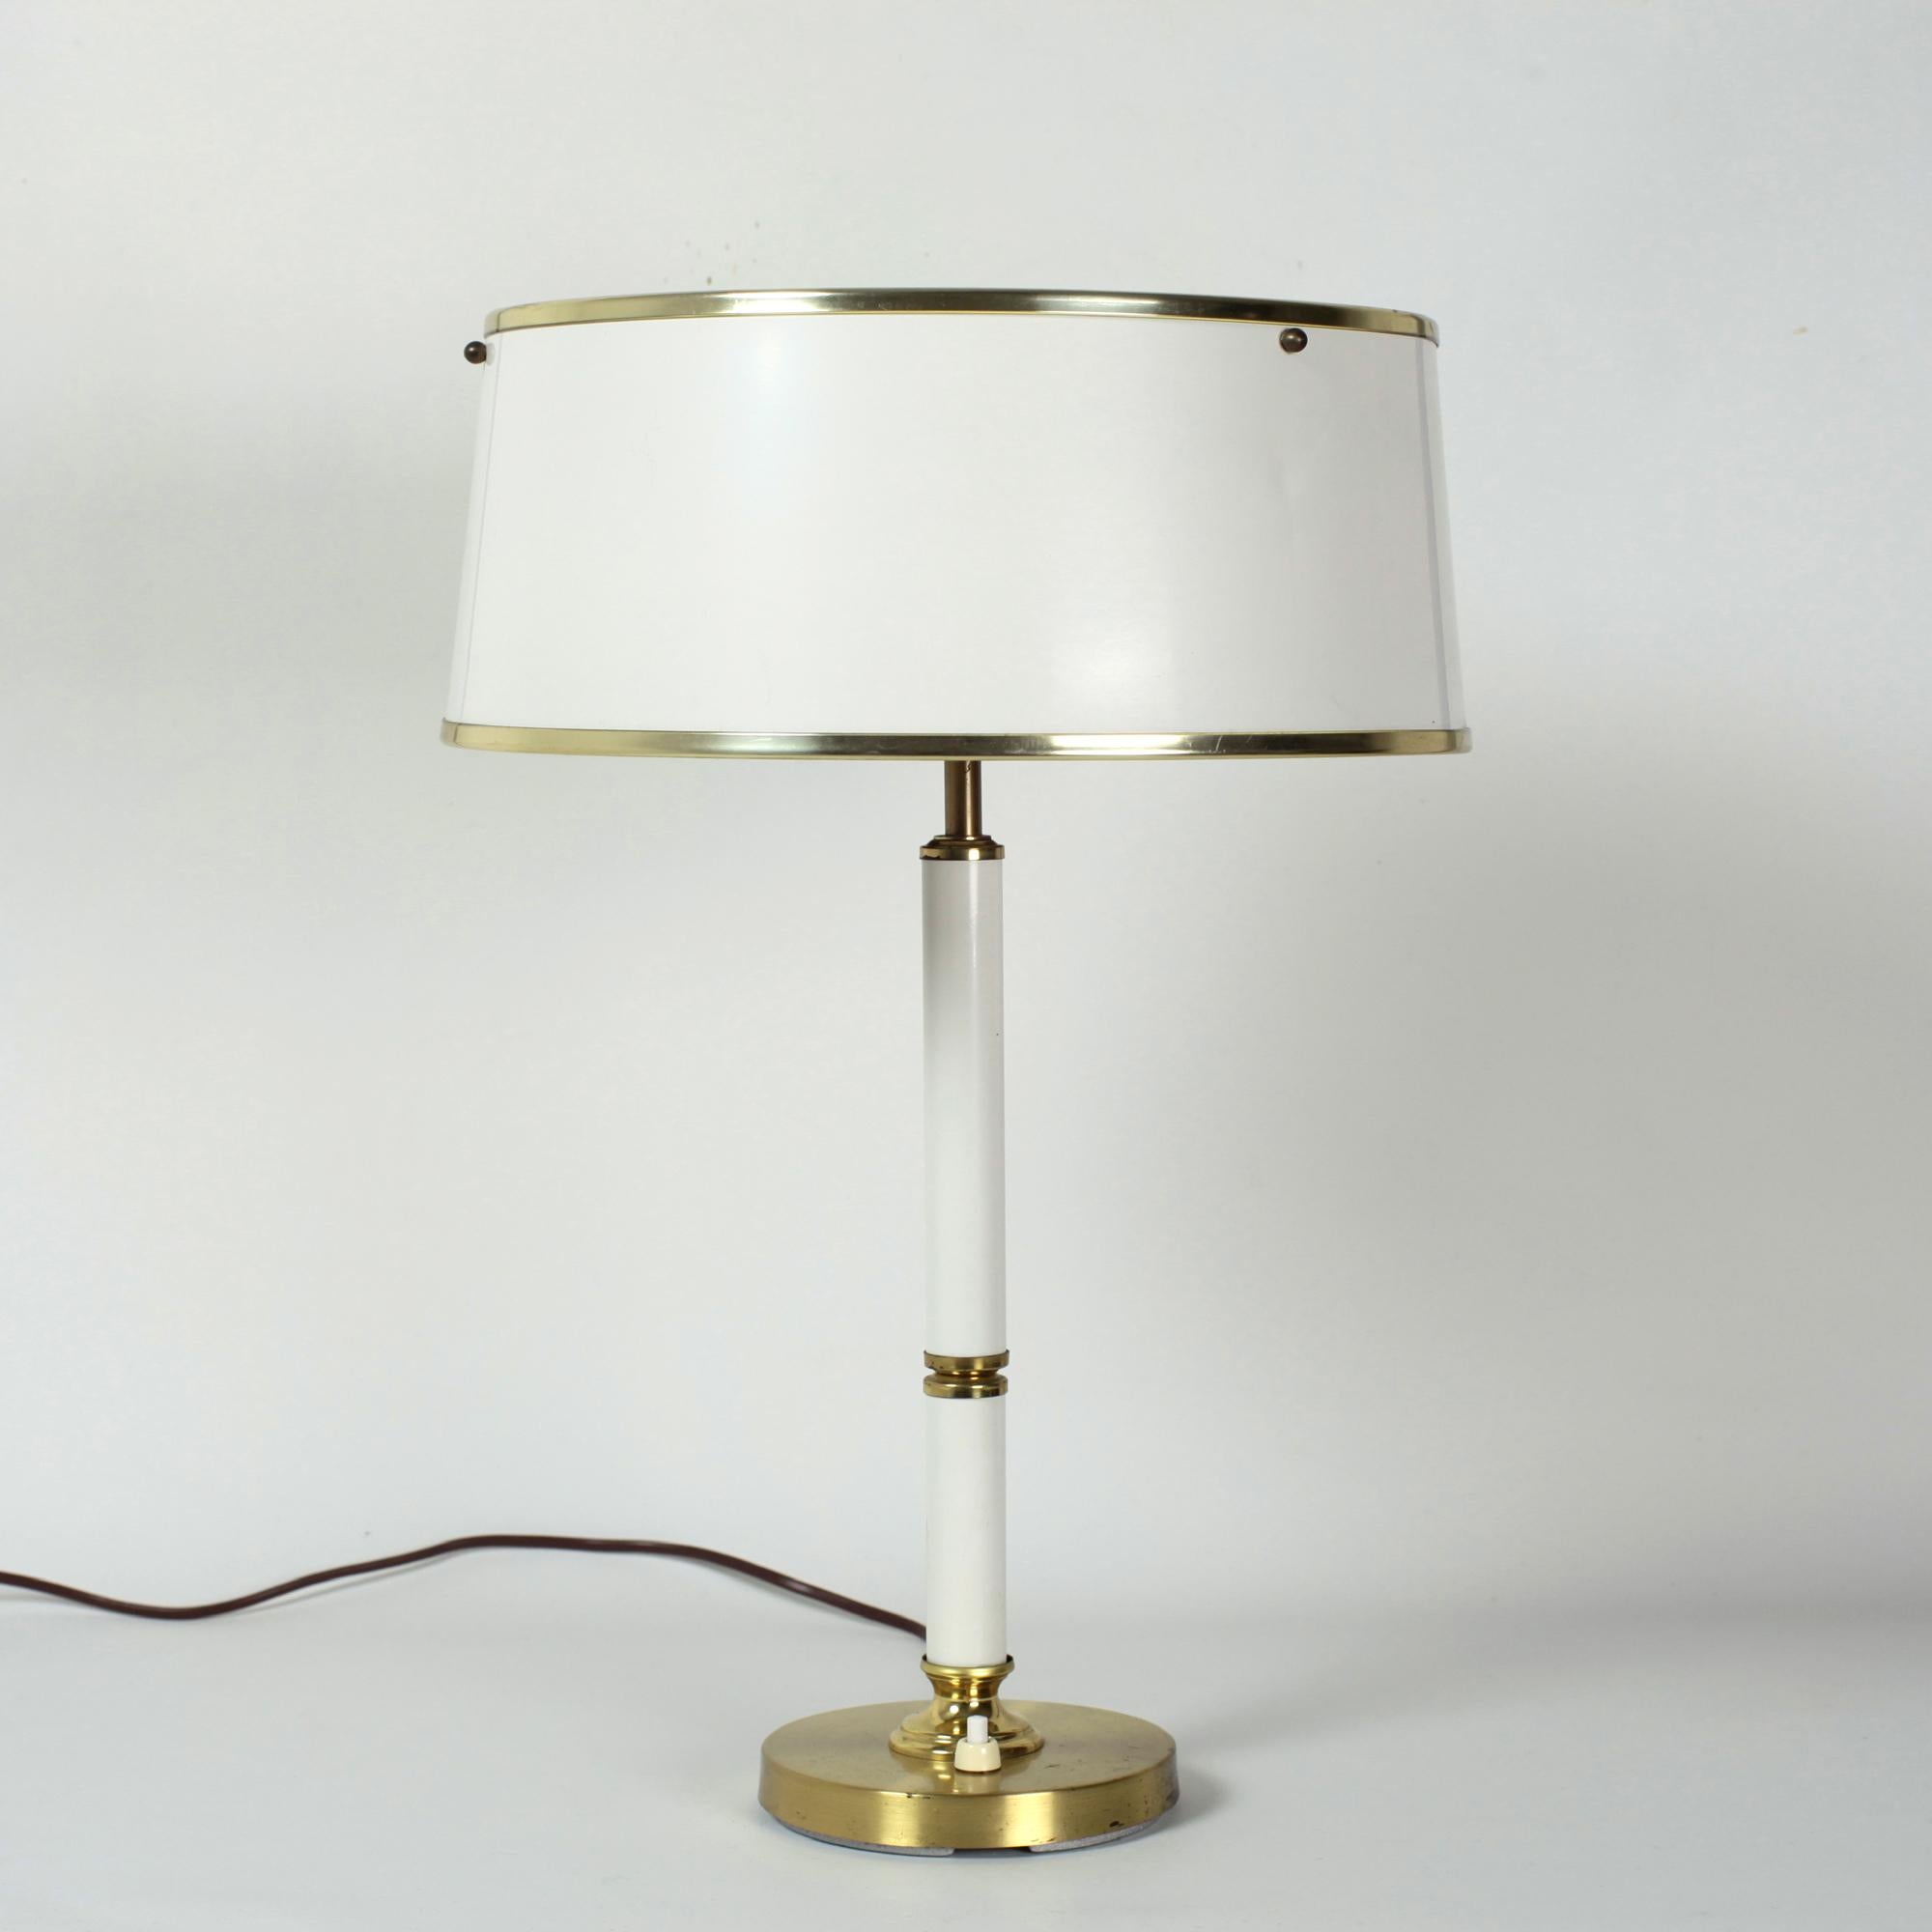 Belle lampe de table ou lampe de bureau en métal laqué blanc et laiton fabriquée par Boréns Borås en Suède dans les années 1970.
Les modèles d'éclairage modernes suédois de Boréns Borås sont éternellement intemporels et d'actualité.
2 ampoules